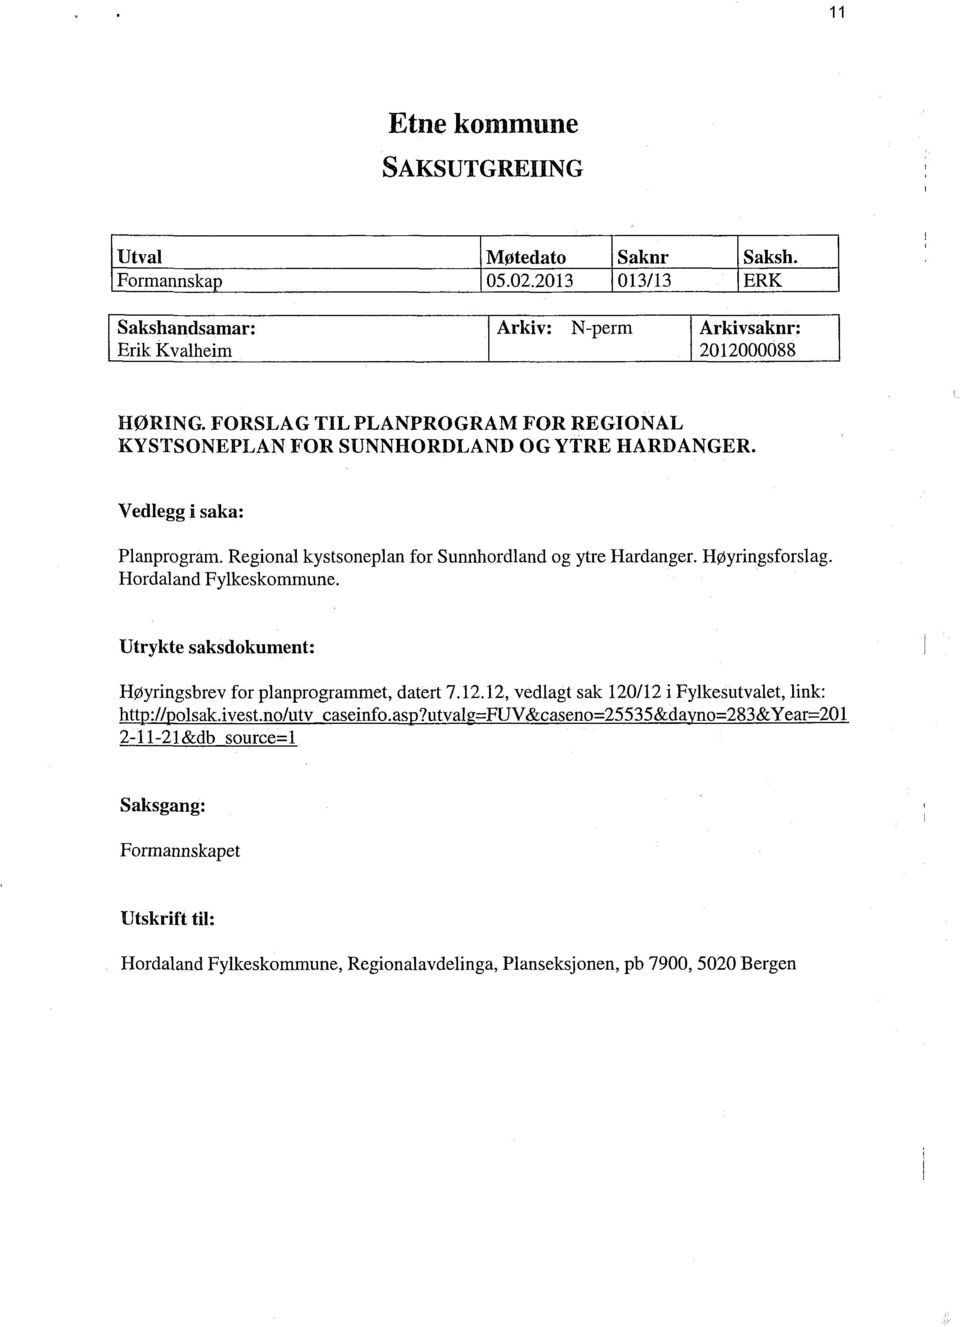 Høyringsforslag. Hordaland Fylkeskommune. Utrykte saksdokument: Høyringsbrev for planprogrammet, datert 7.12.12, vedlagt sak 120/12 i Fylkesutvalet, Hnk: http://polsak.ivest.